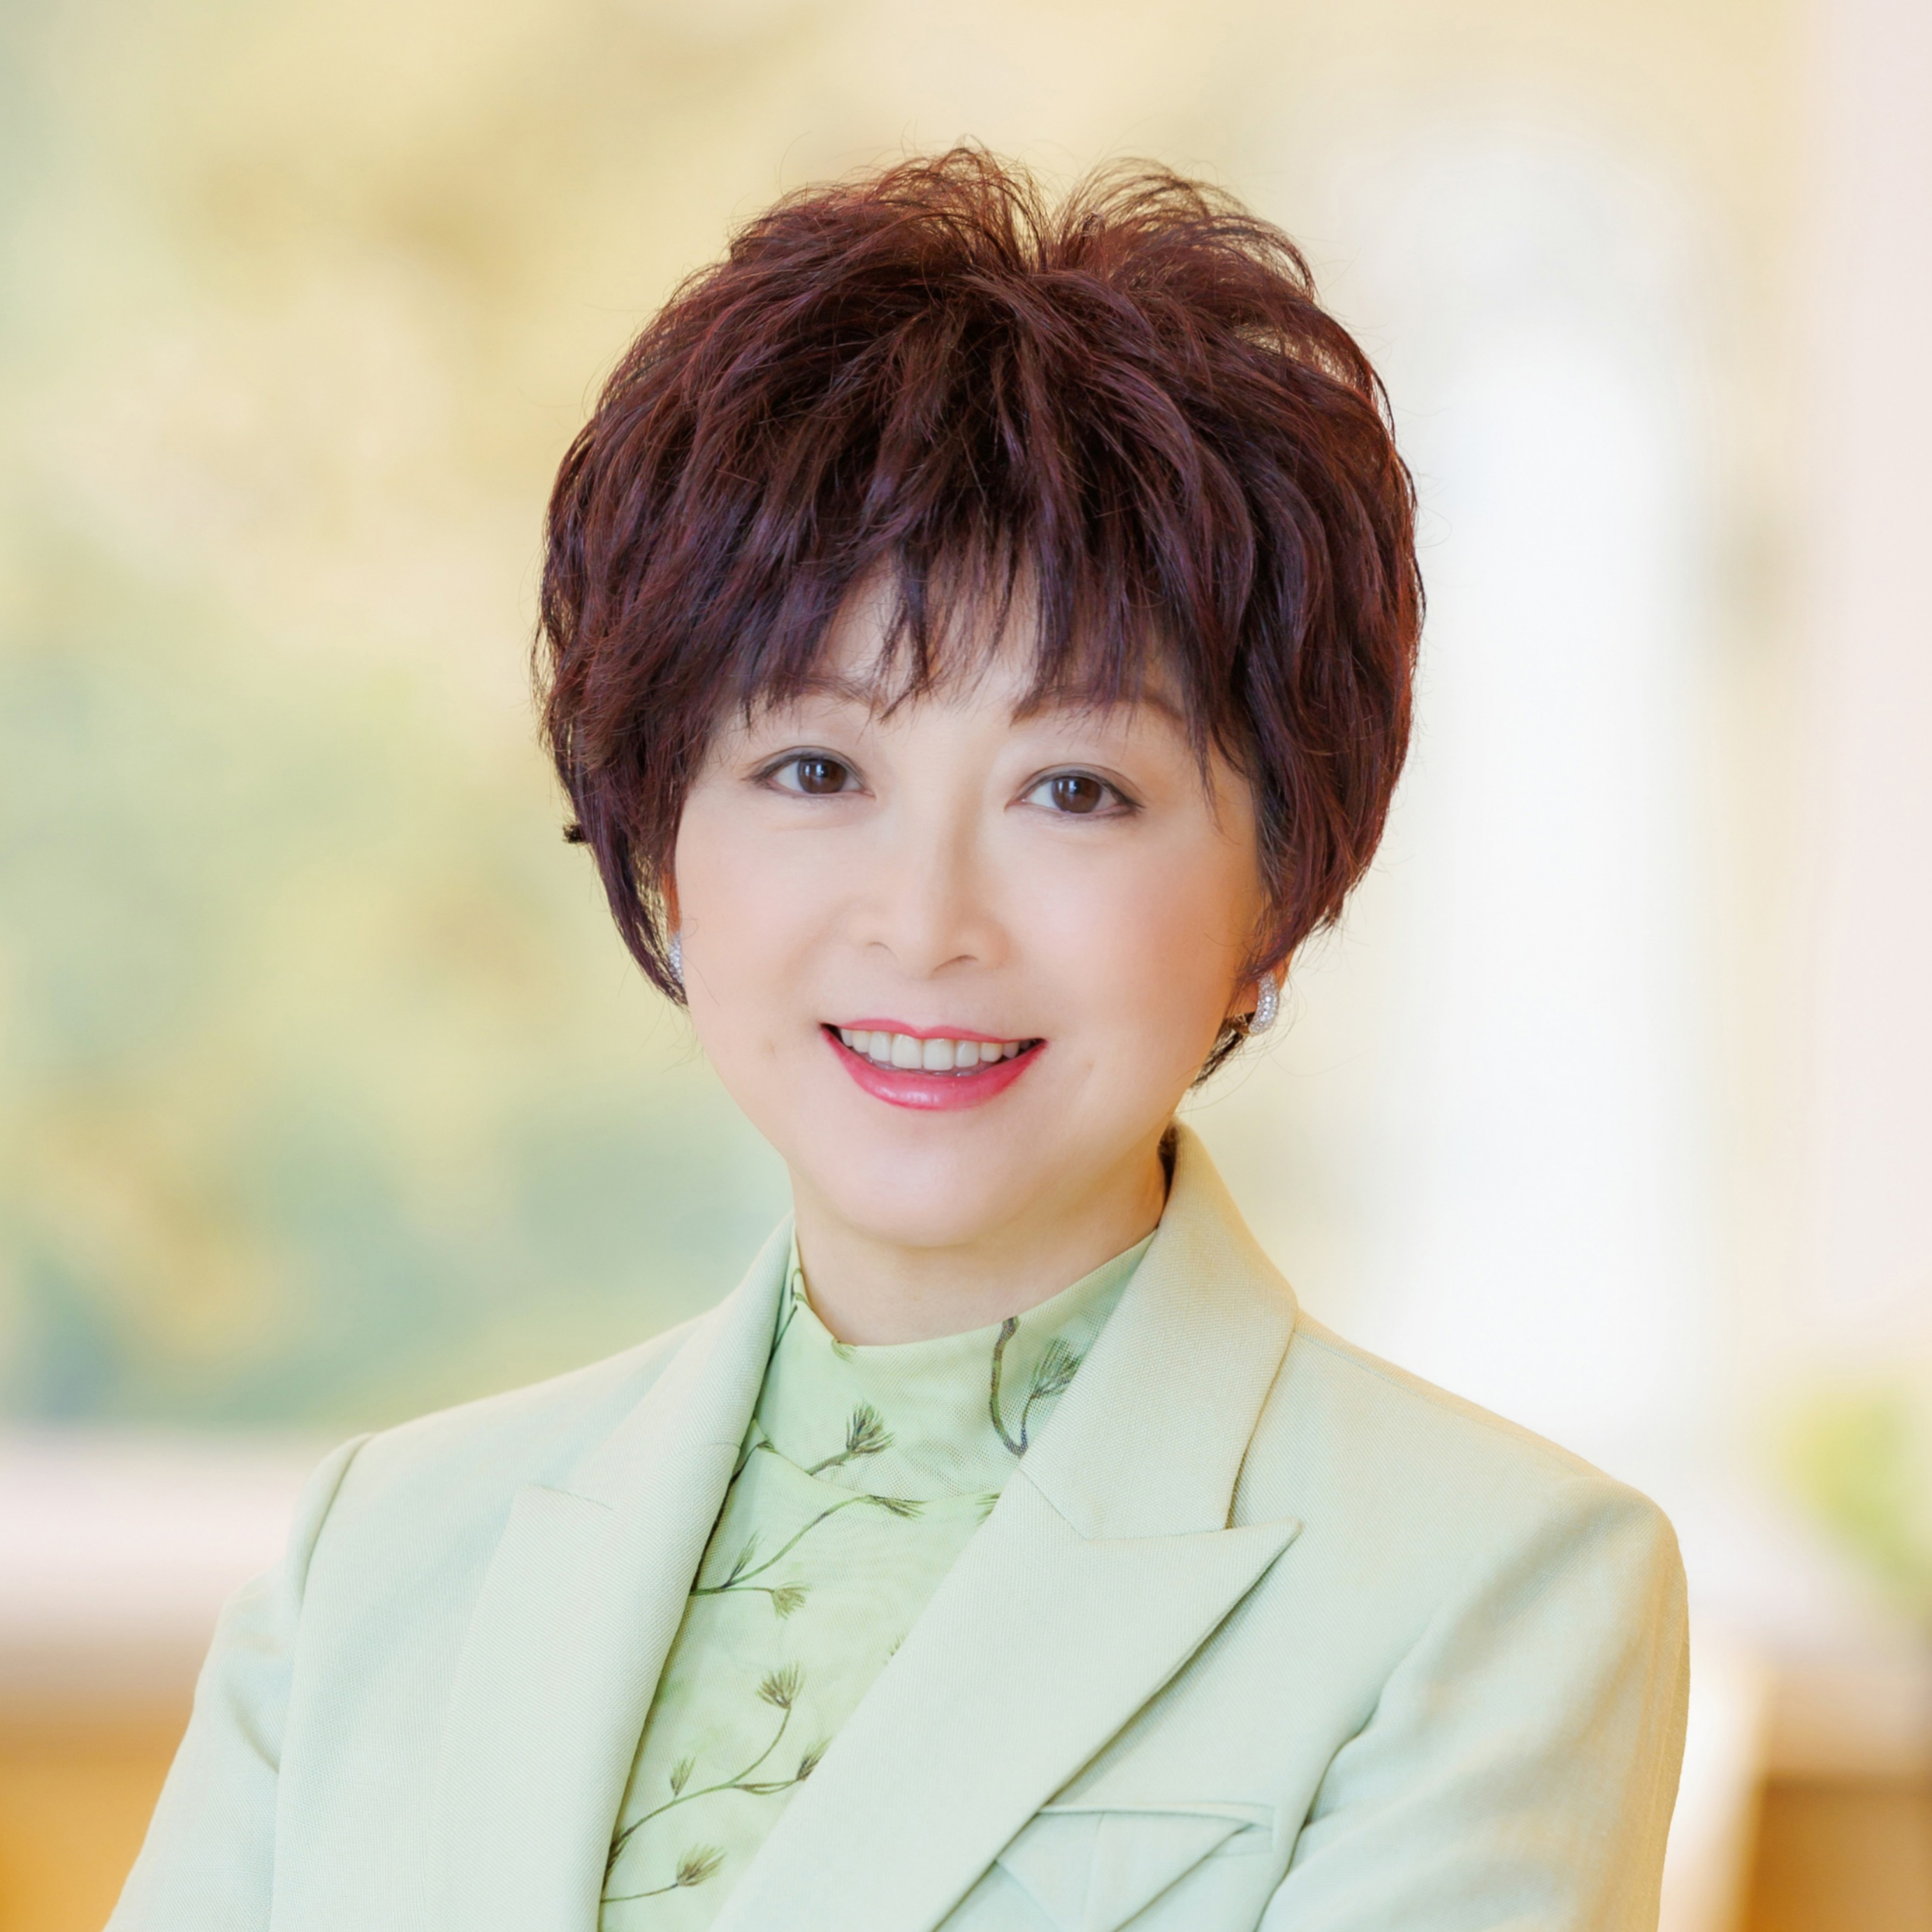 Ms Wendy Man Lai-hung